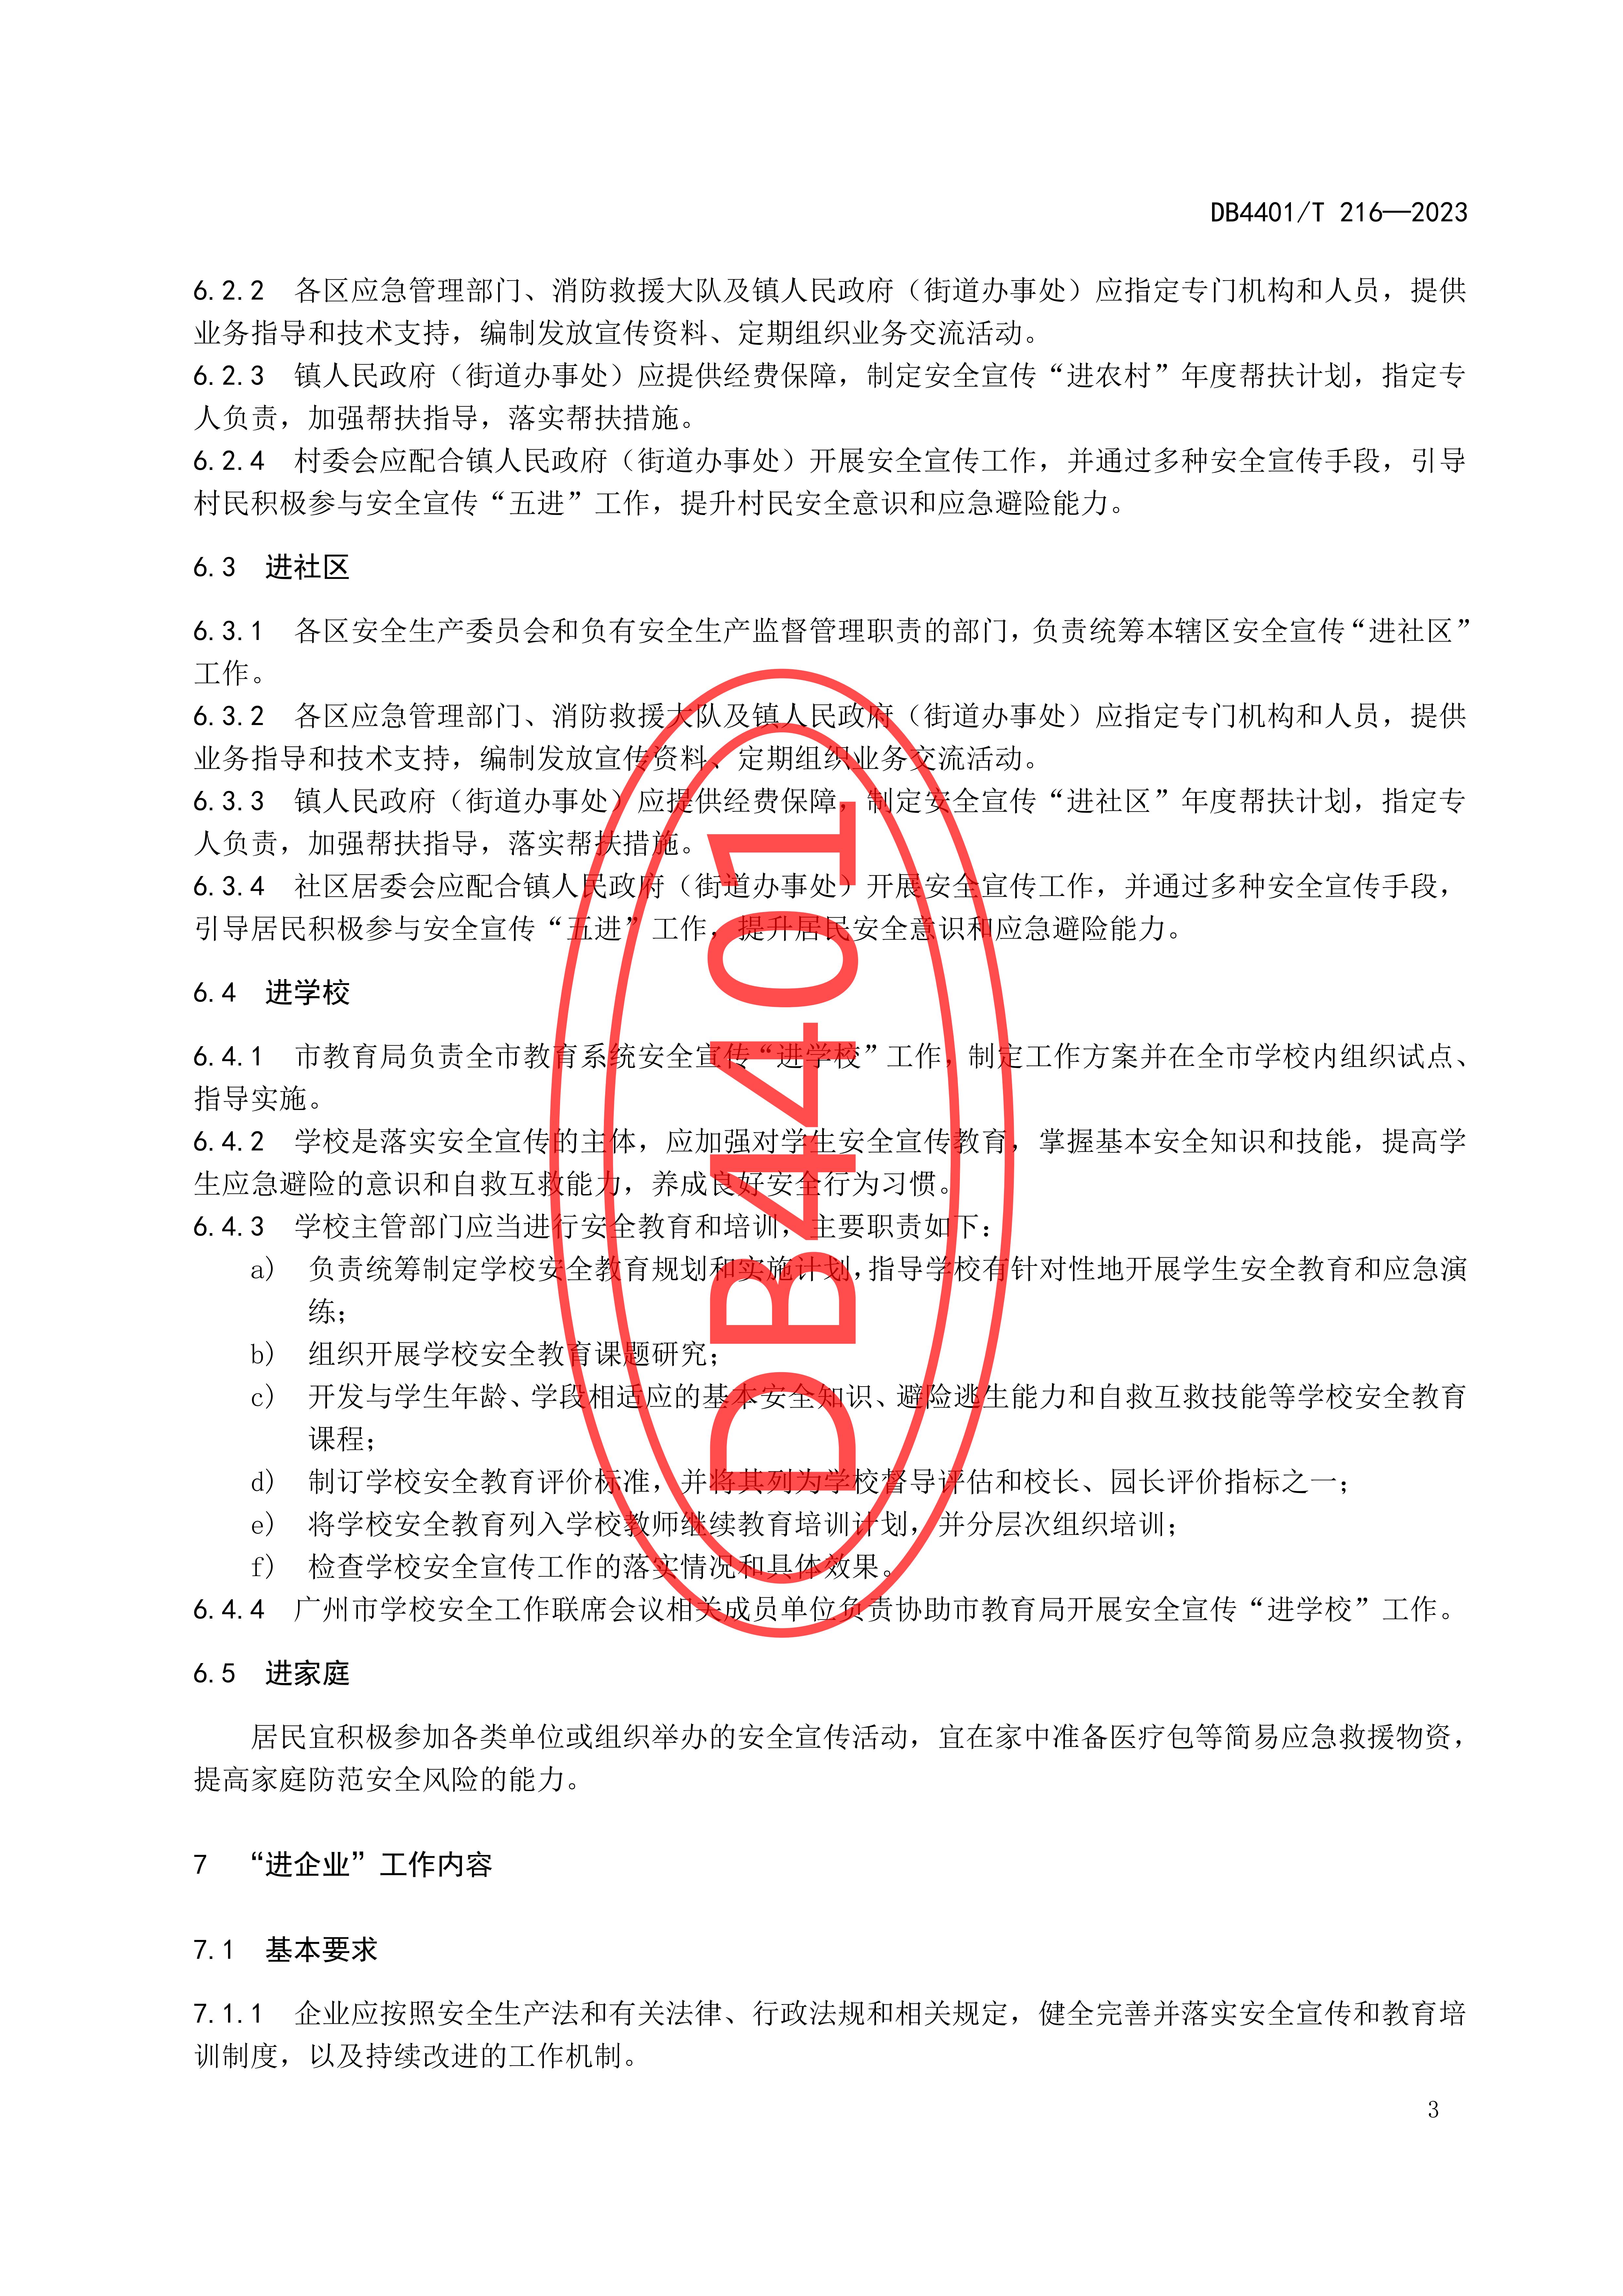 (终稿 发布稿)广州市地方标准《安全宣传“五进”工作规范》20230625_08.jpg